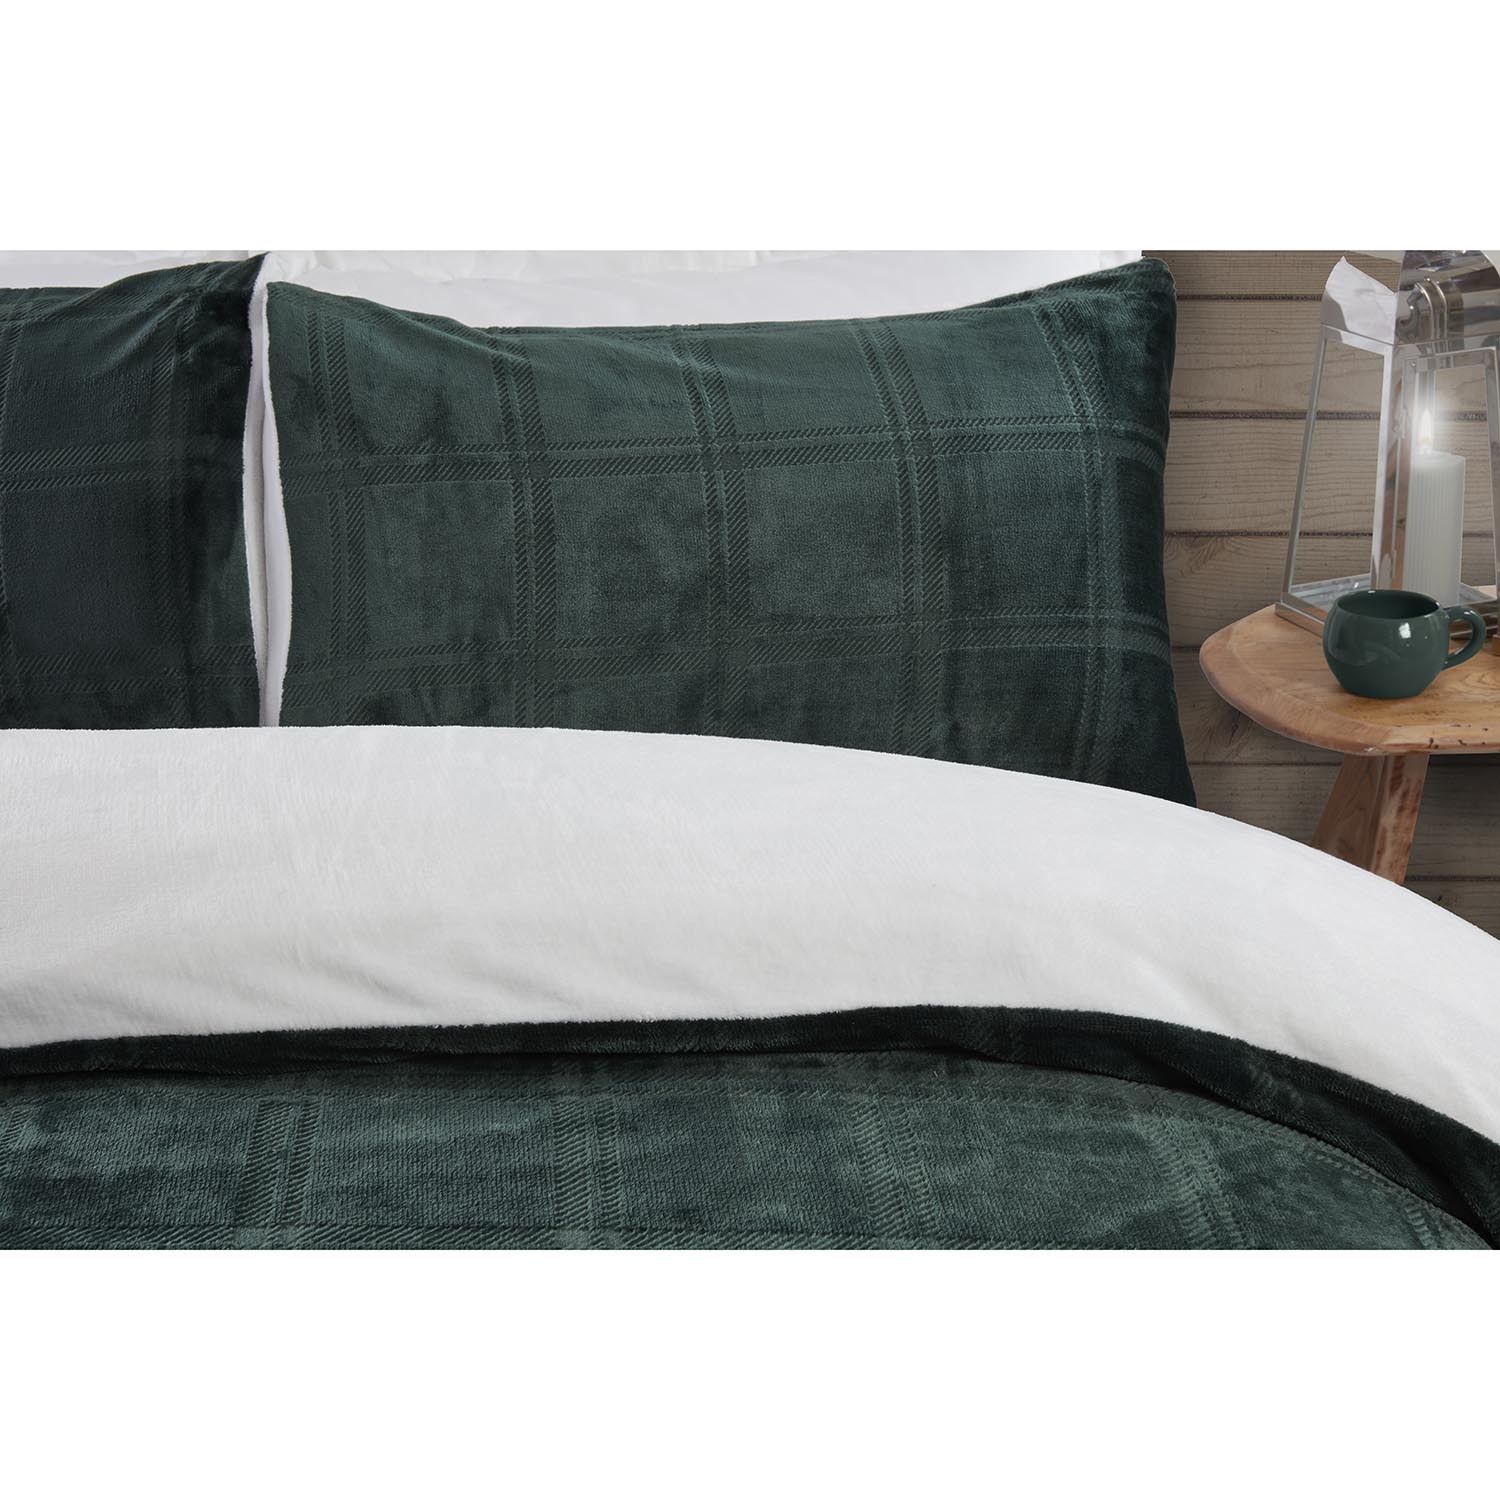 Halston Double Green Check Fleece Duvet Cover and Pillowcase Set Image 4